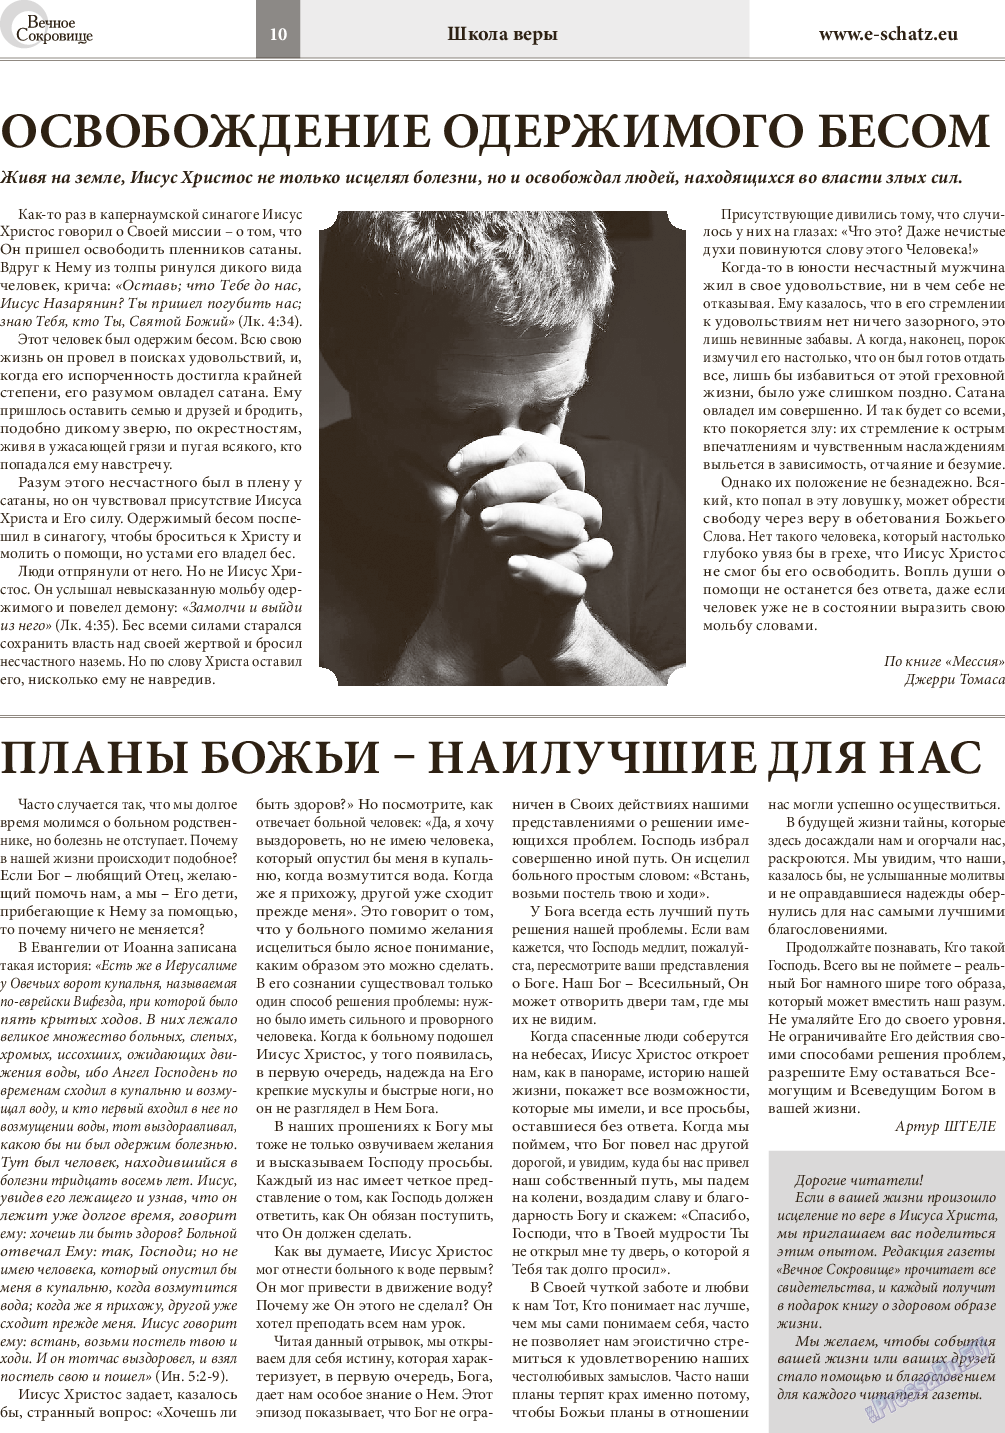 Вечное сокровище (газета). 2014 год, номер 6, стр. 10